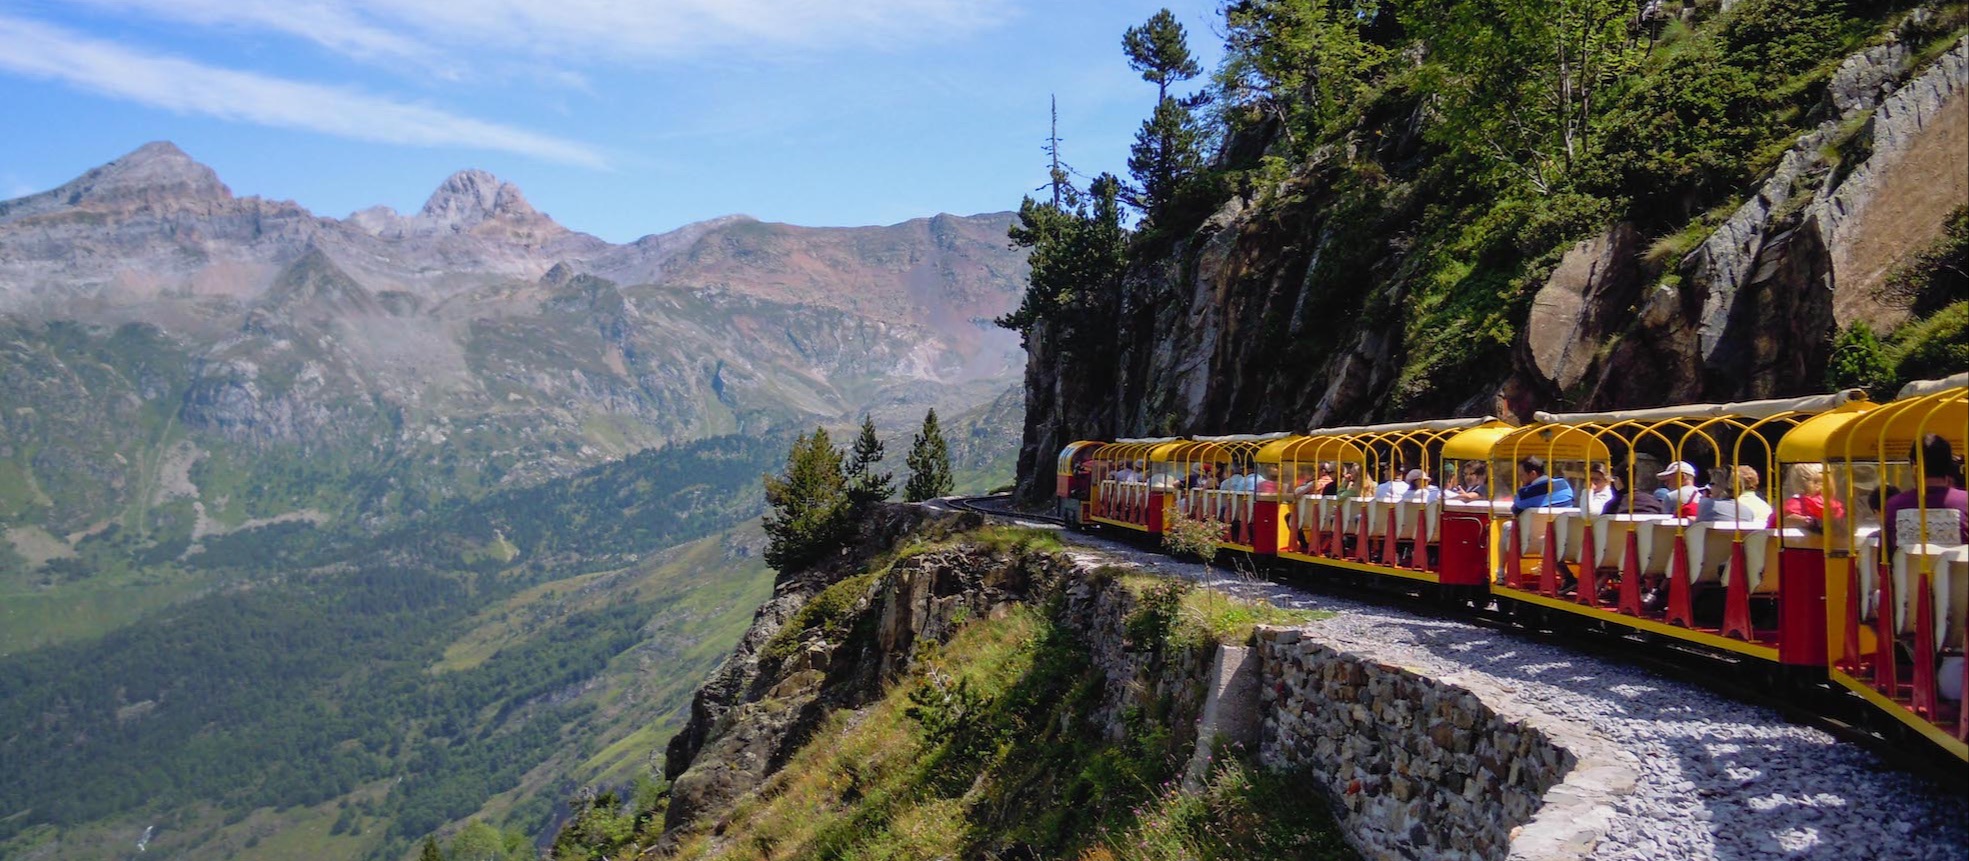 © @artouste – Le Train d’Artouste, perché à 2000m d’altitude dans les Pyrénées Atlantiques